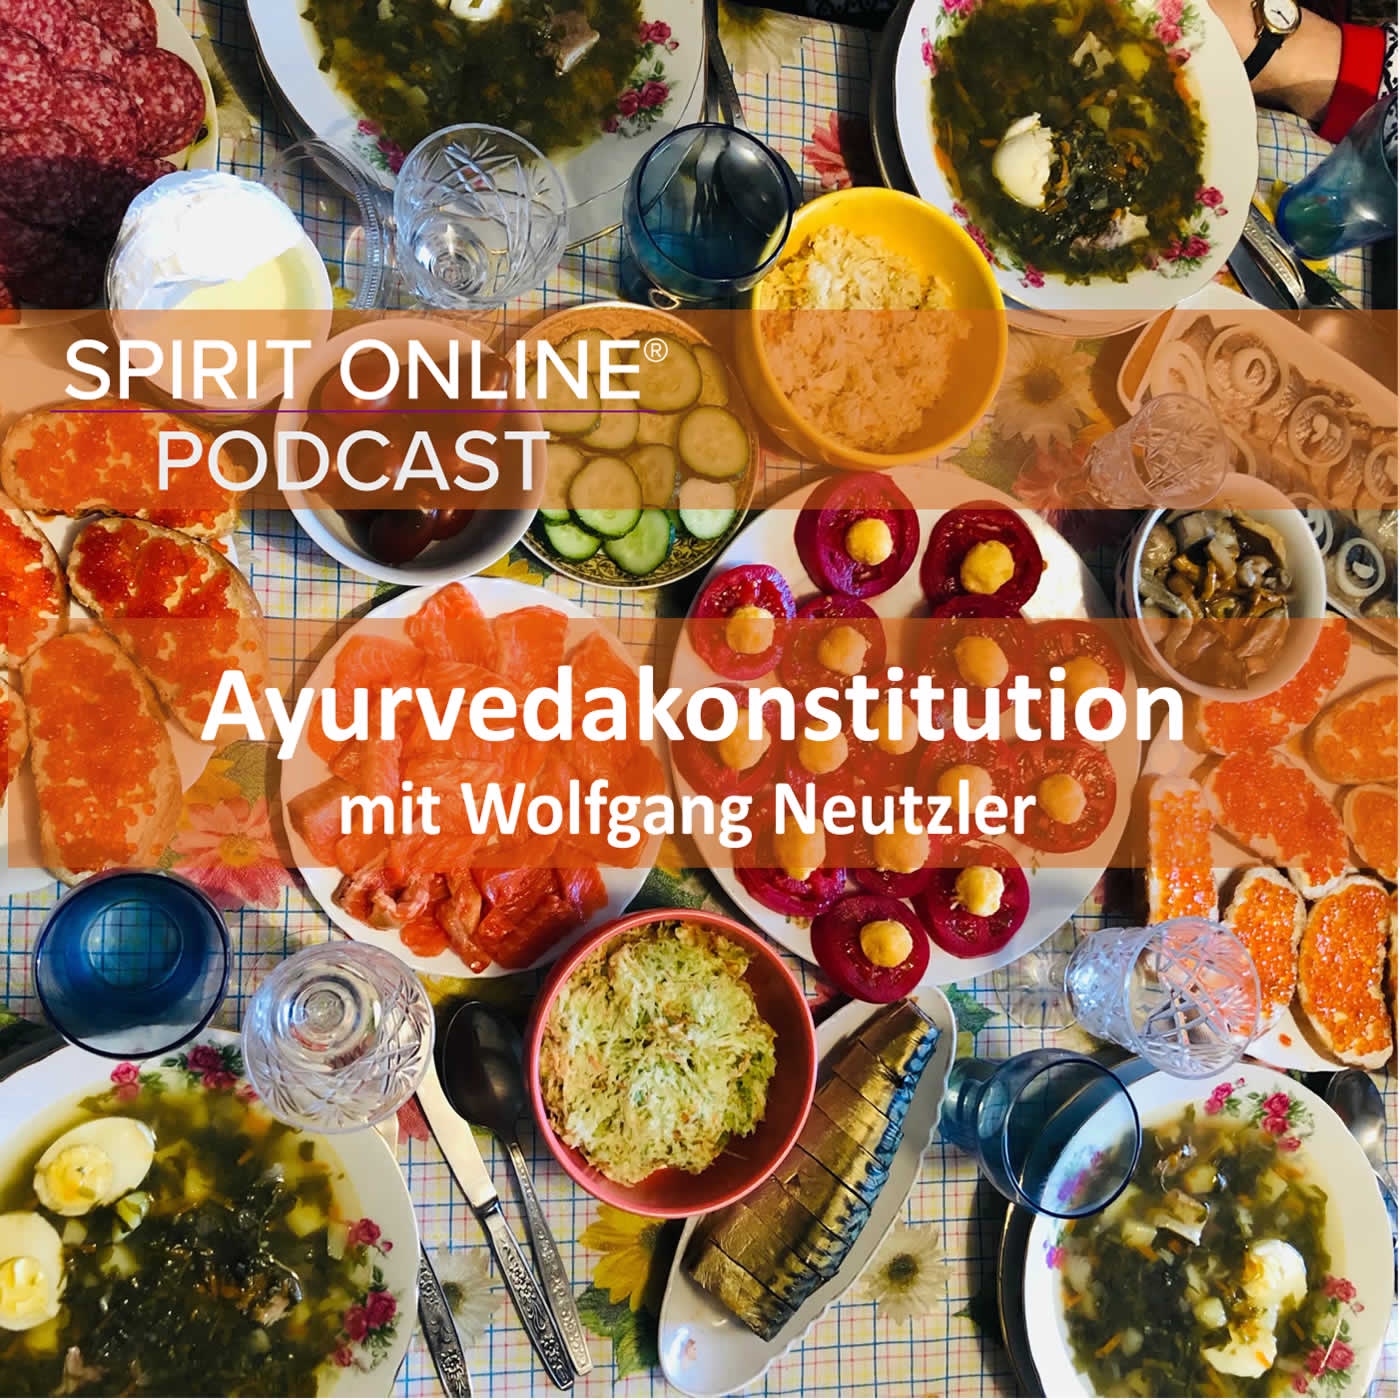 Die Ayurvedakonstitution – wie bleibt man gesund nach Ayurveda mit Wolfgang Neutzler